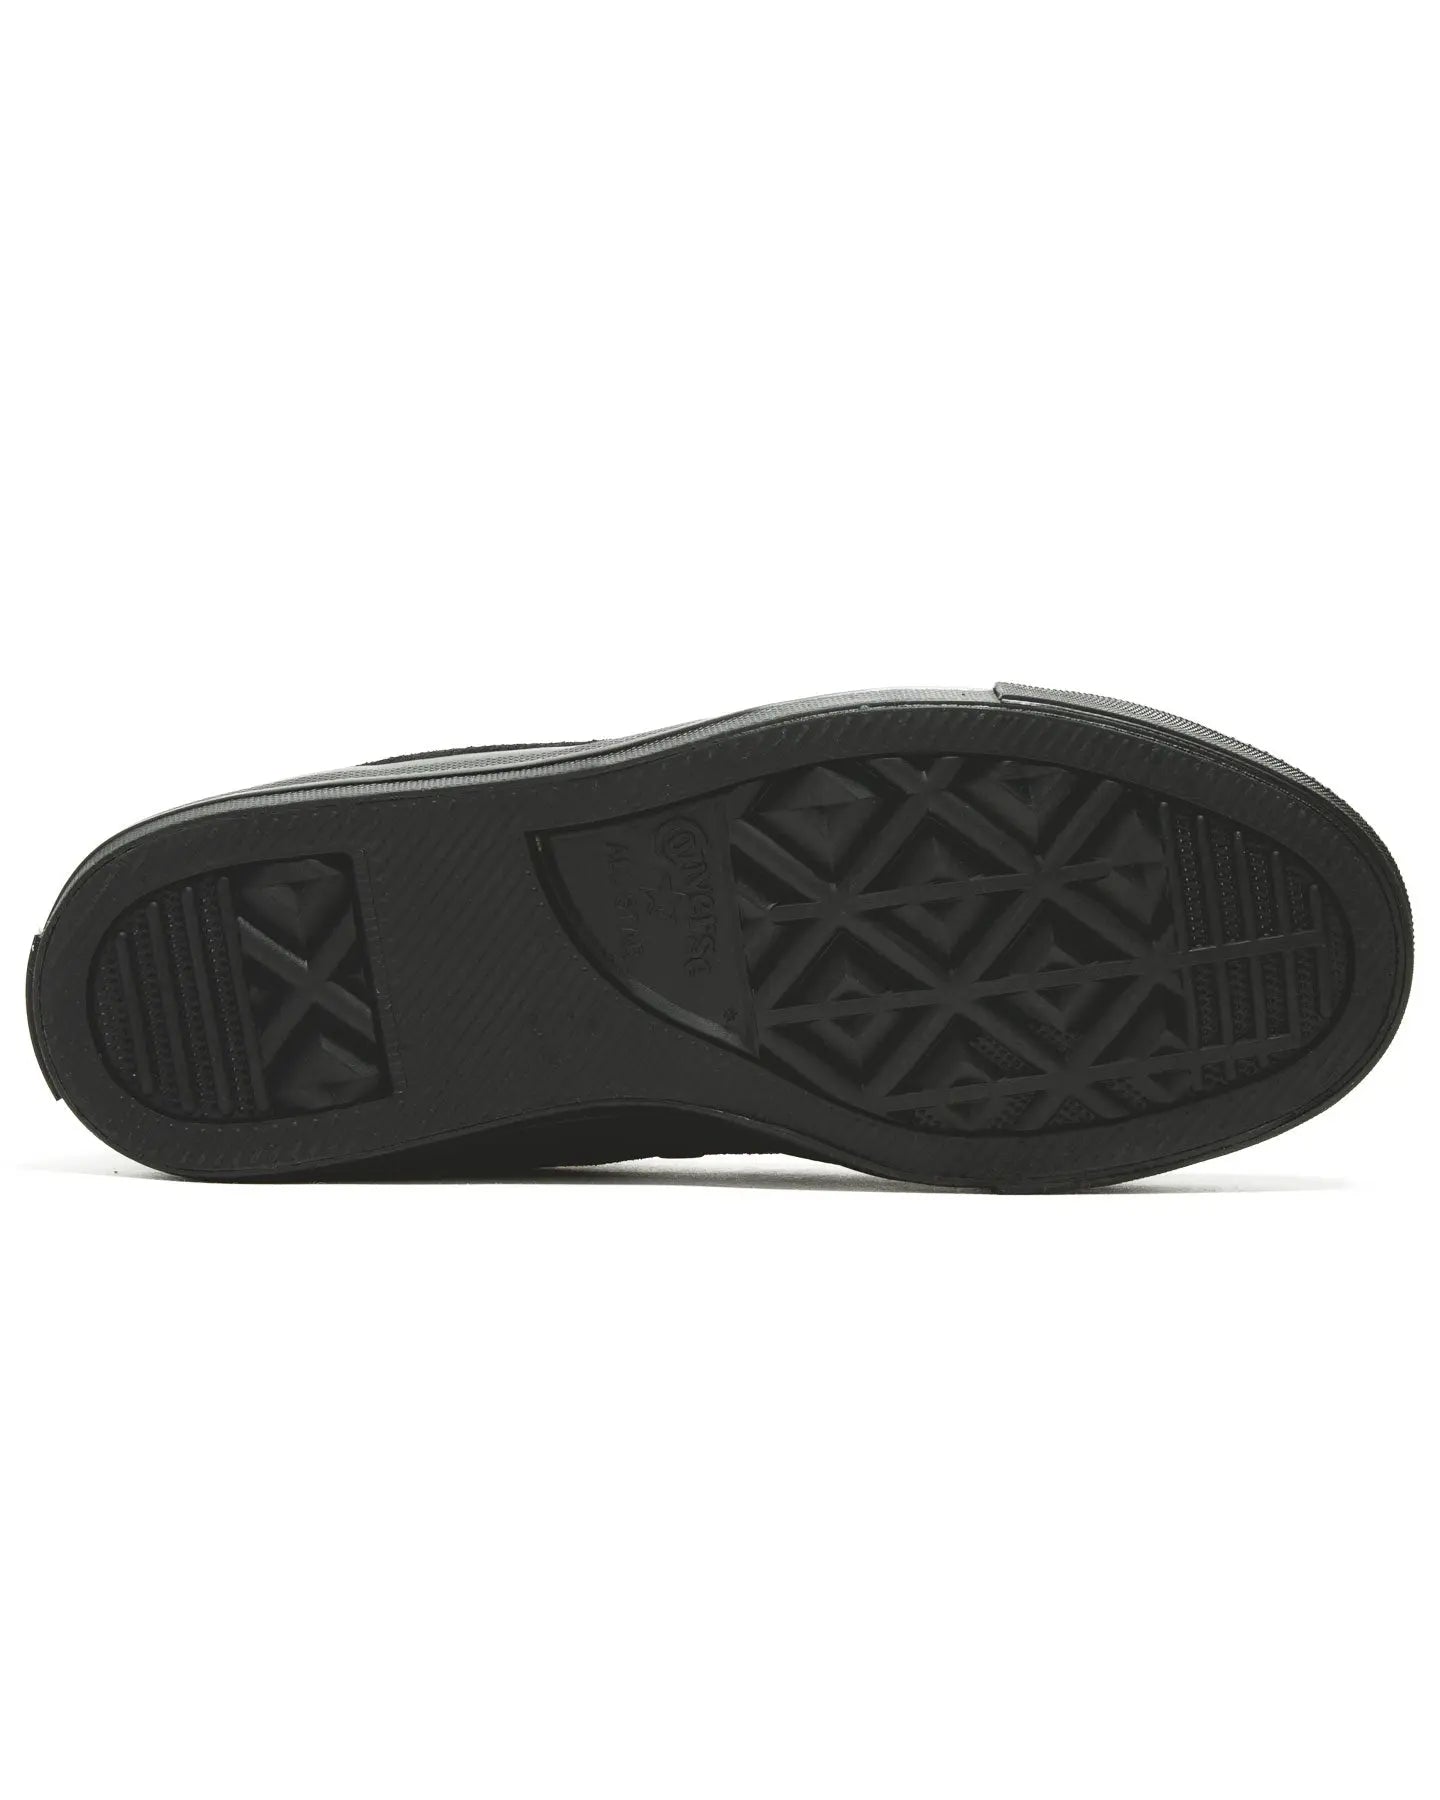 Cons CTAS Pro Hi Suede - Black / Black Footwear